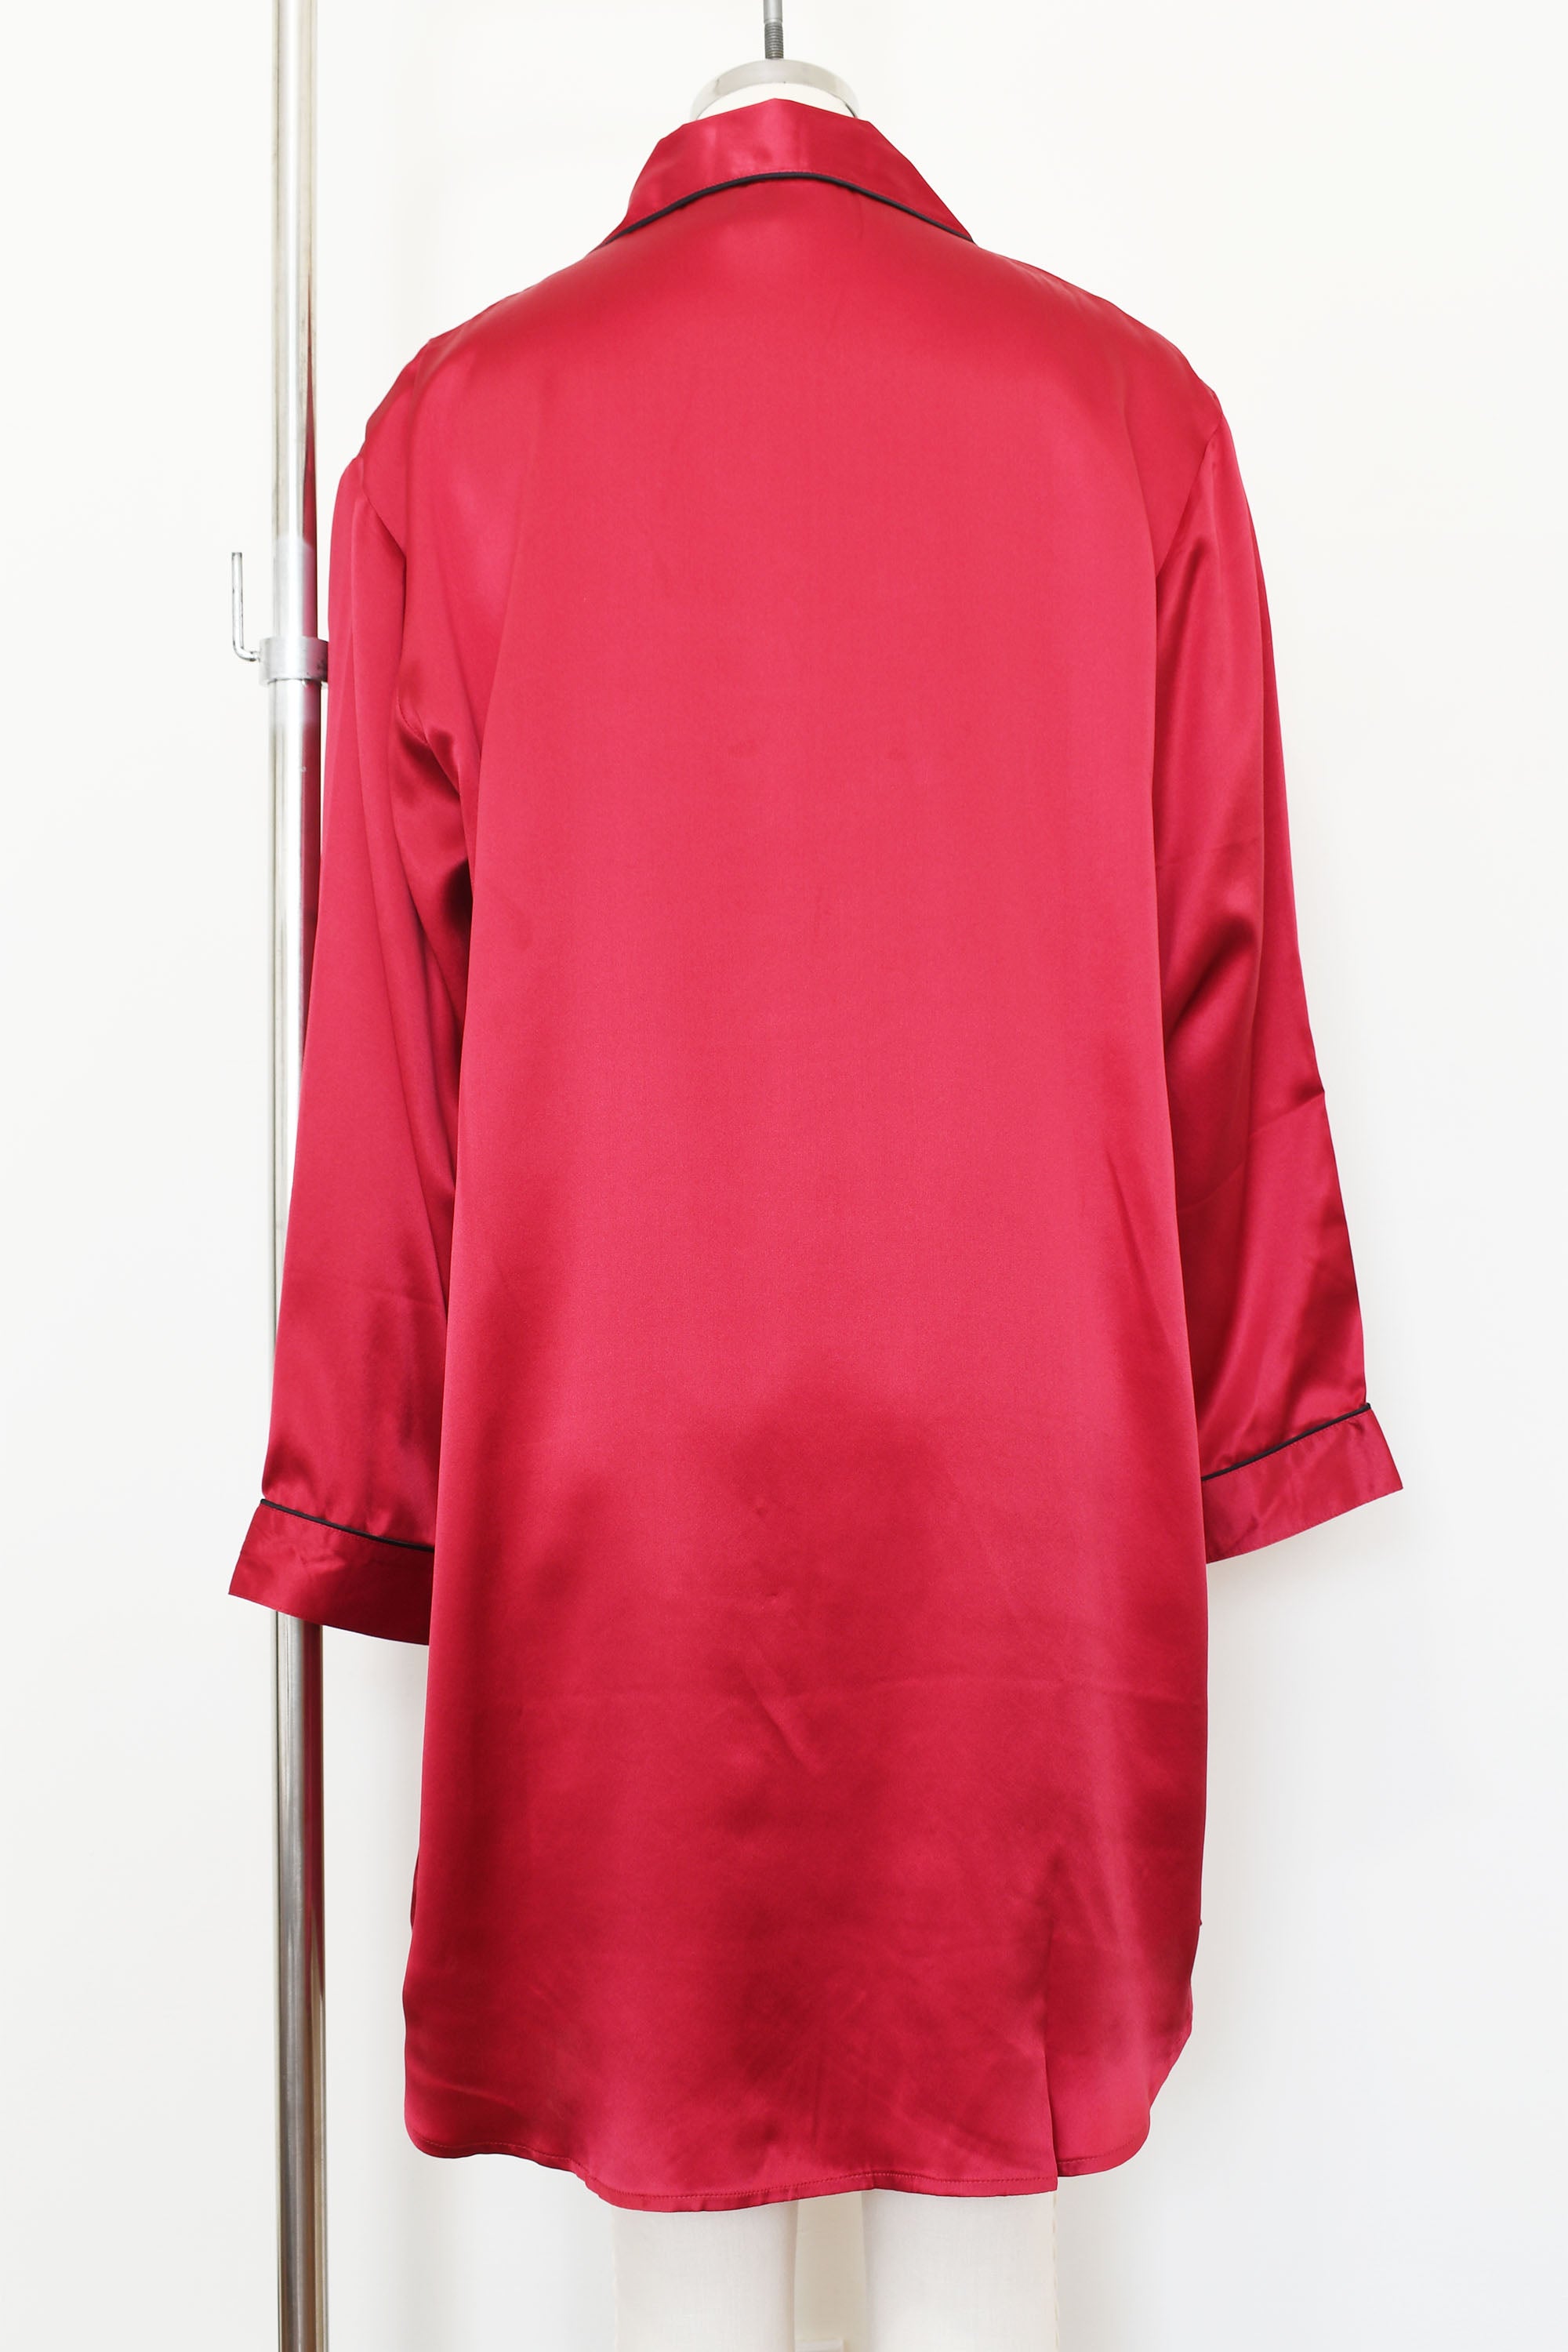 Women's Silk Sleepwear 100% Silk Sleepshirt, LH001, Burgundy, M